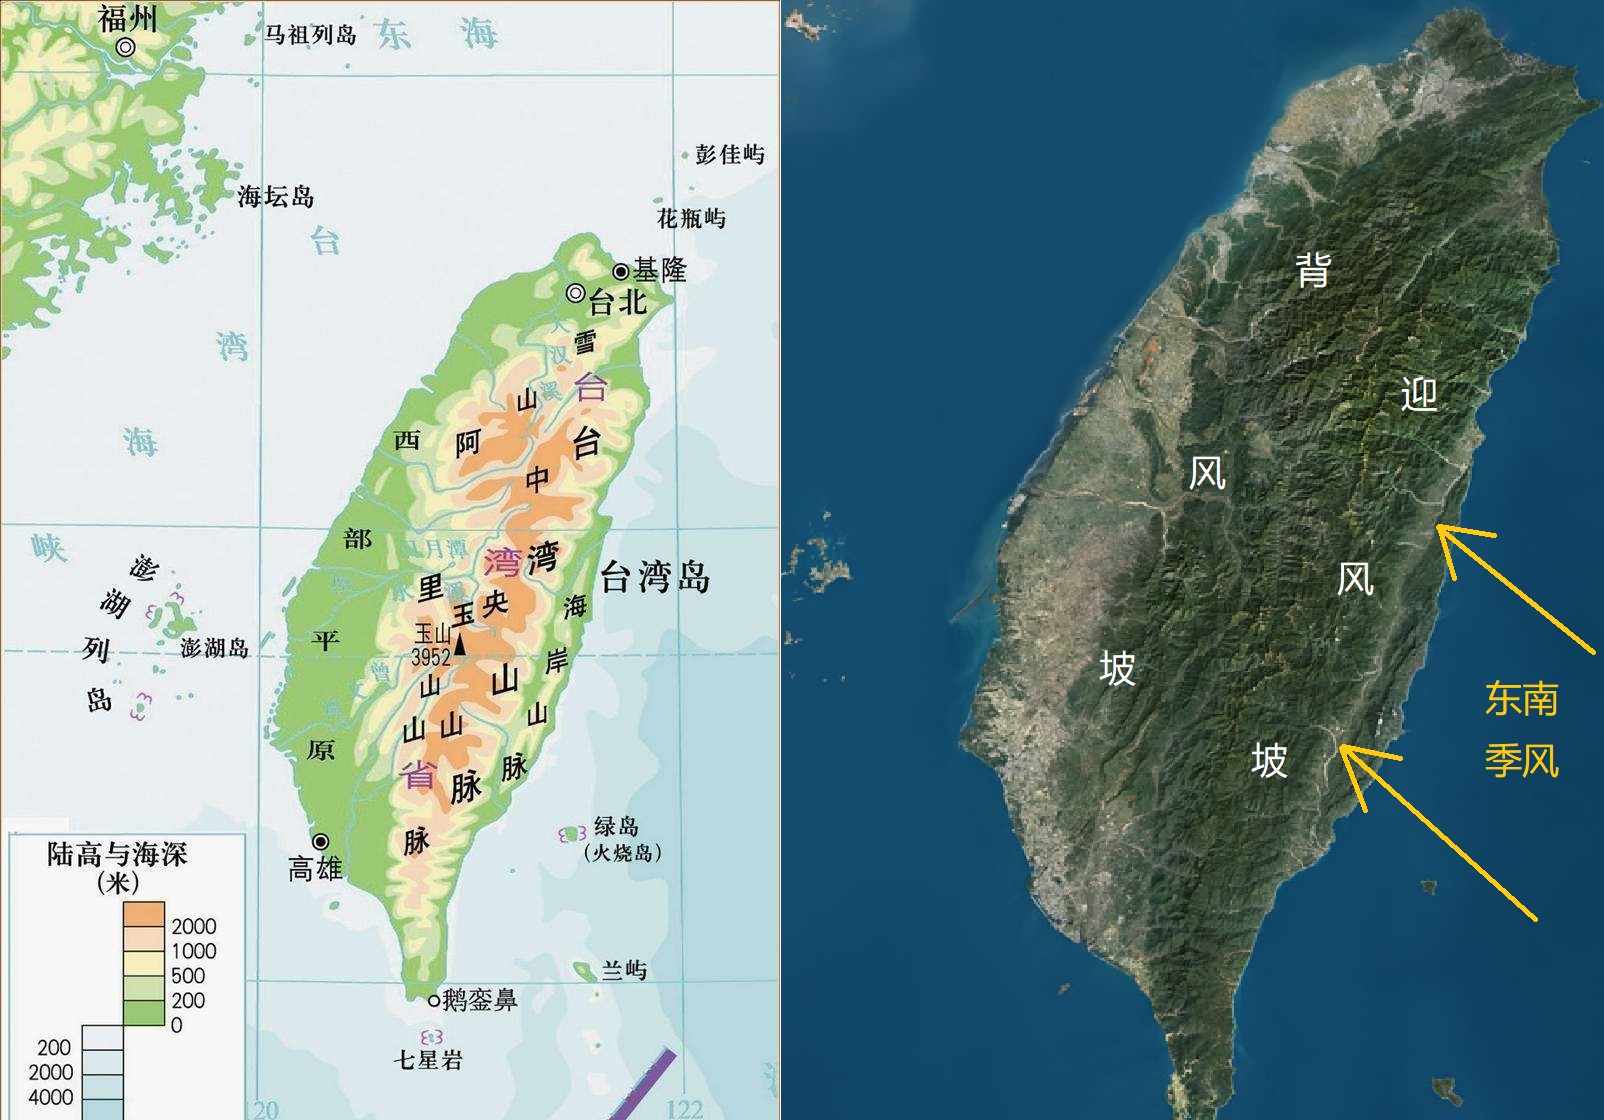 中国面积最大的四个岛屿:台湾岛,海南岛,崇明岛和舟山